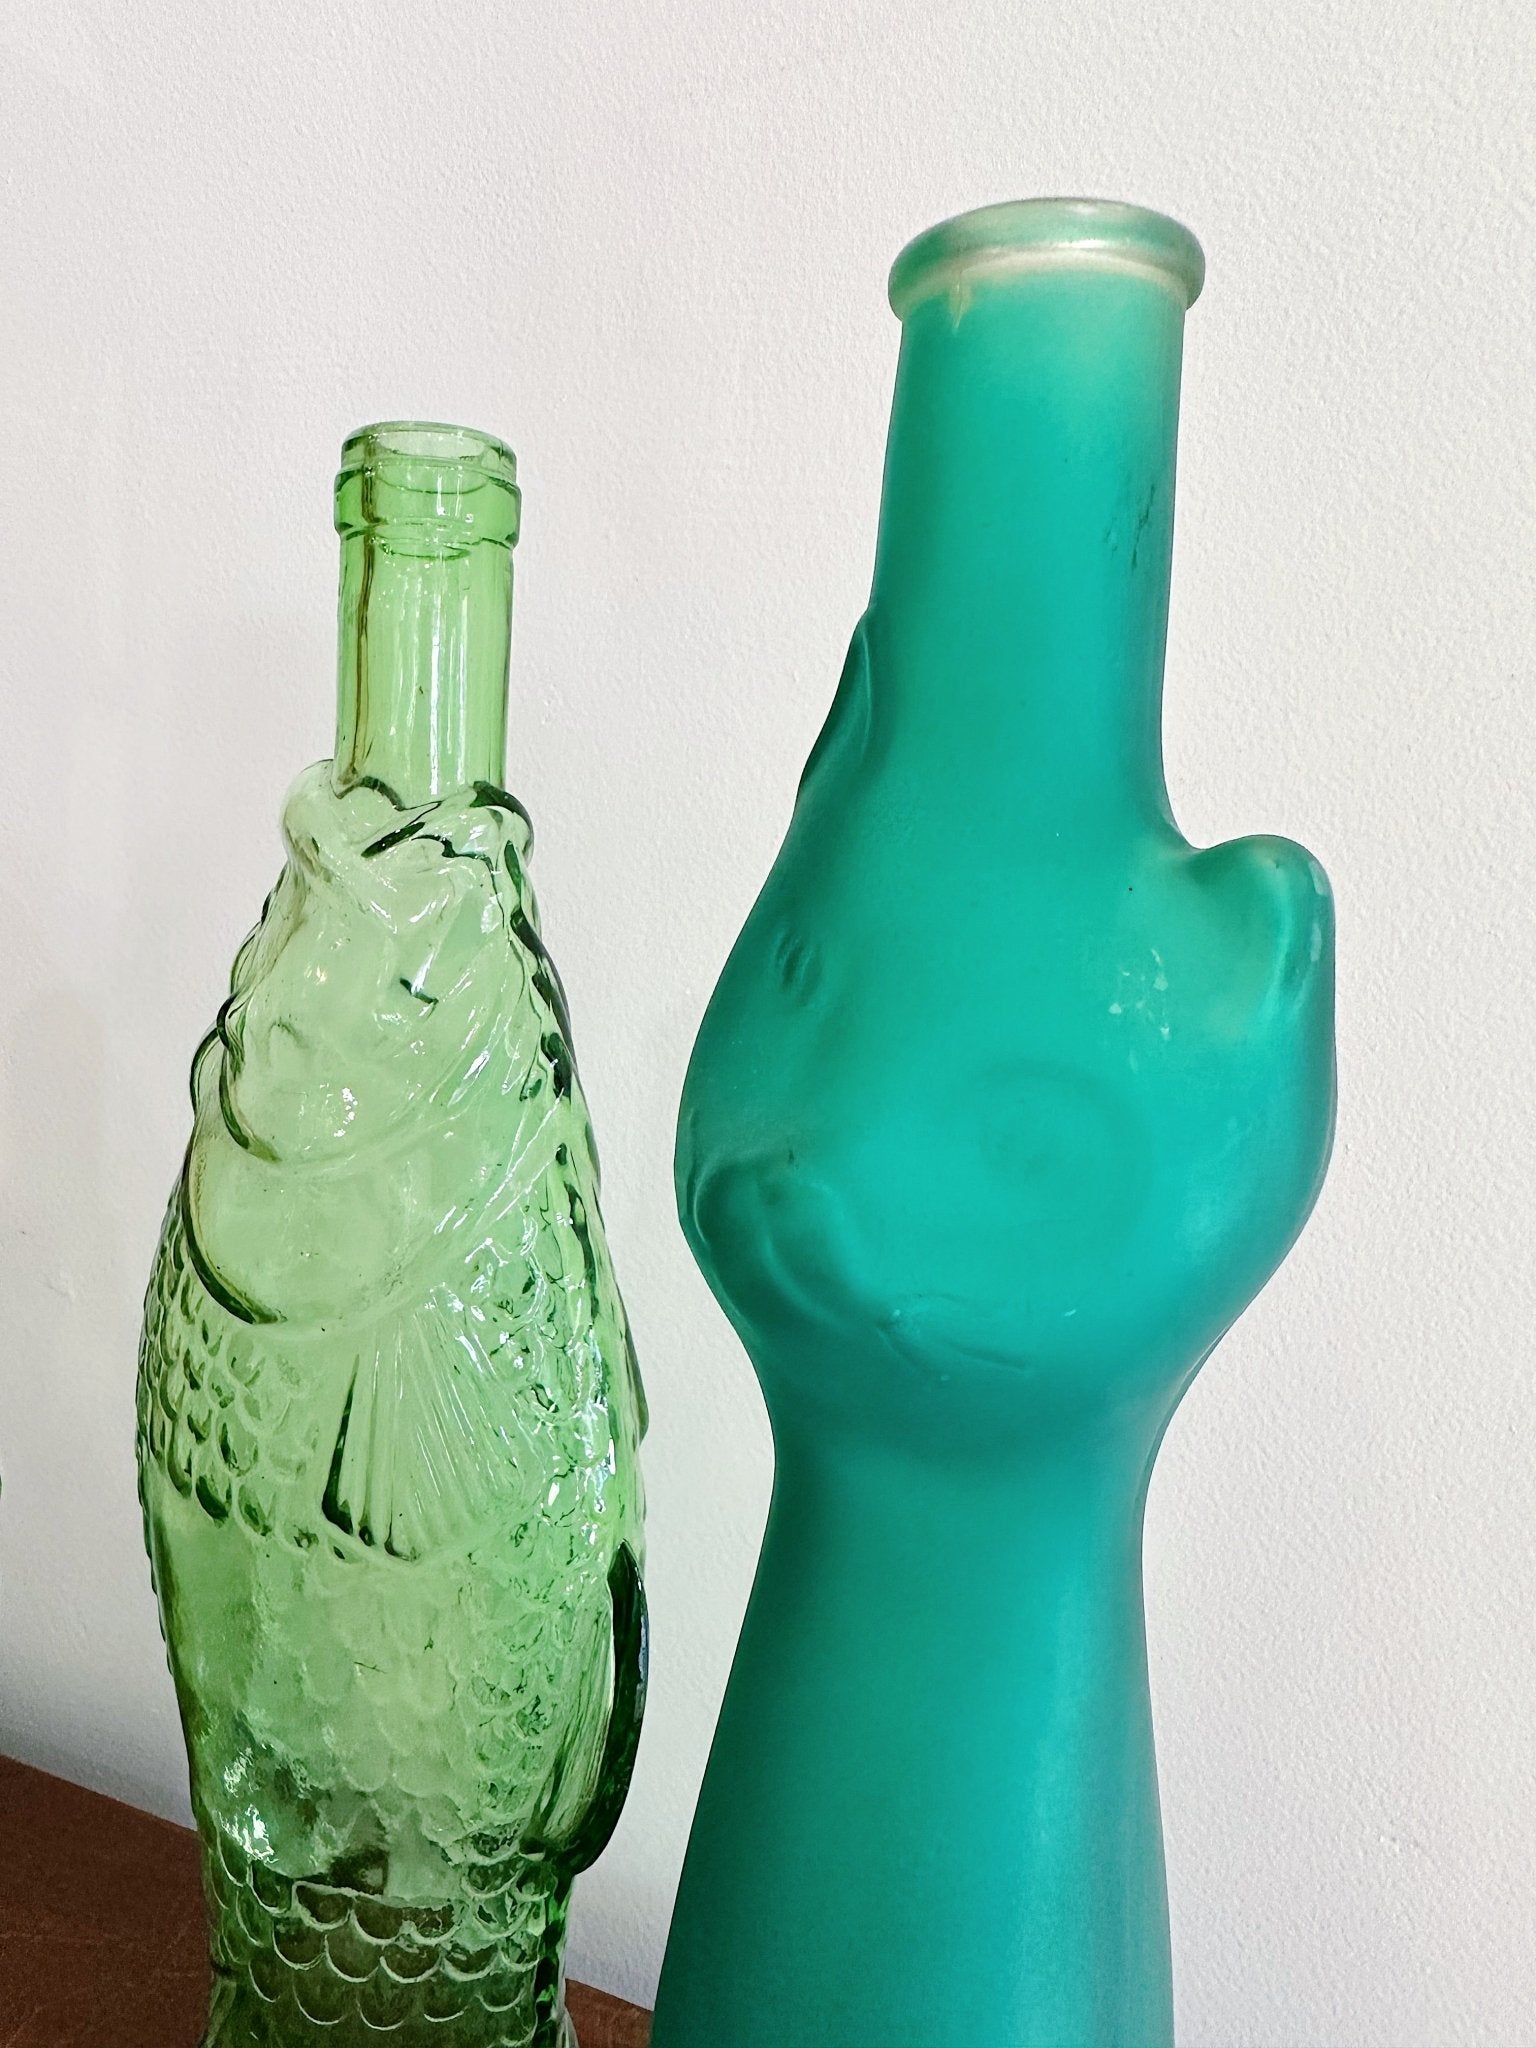 Green Glass Bottles - Rehaus